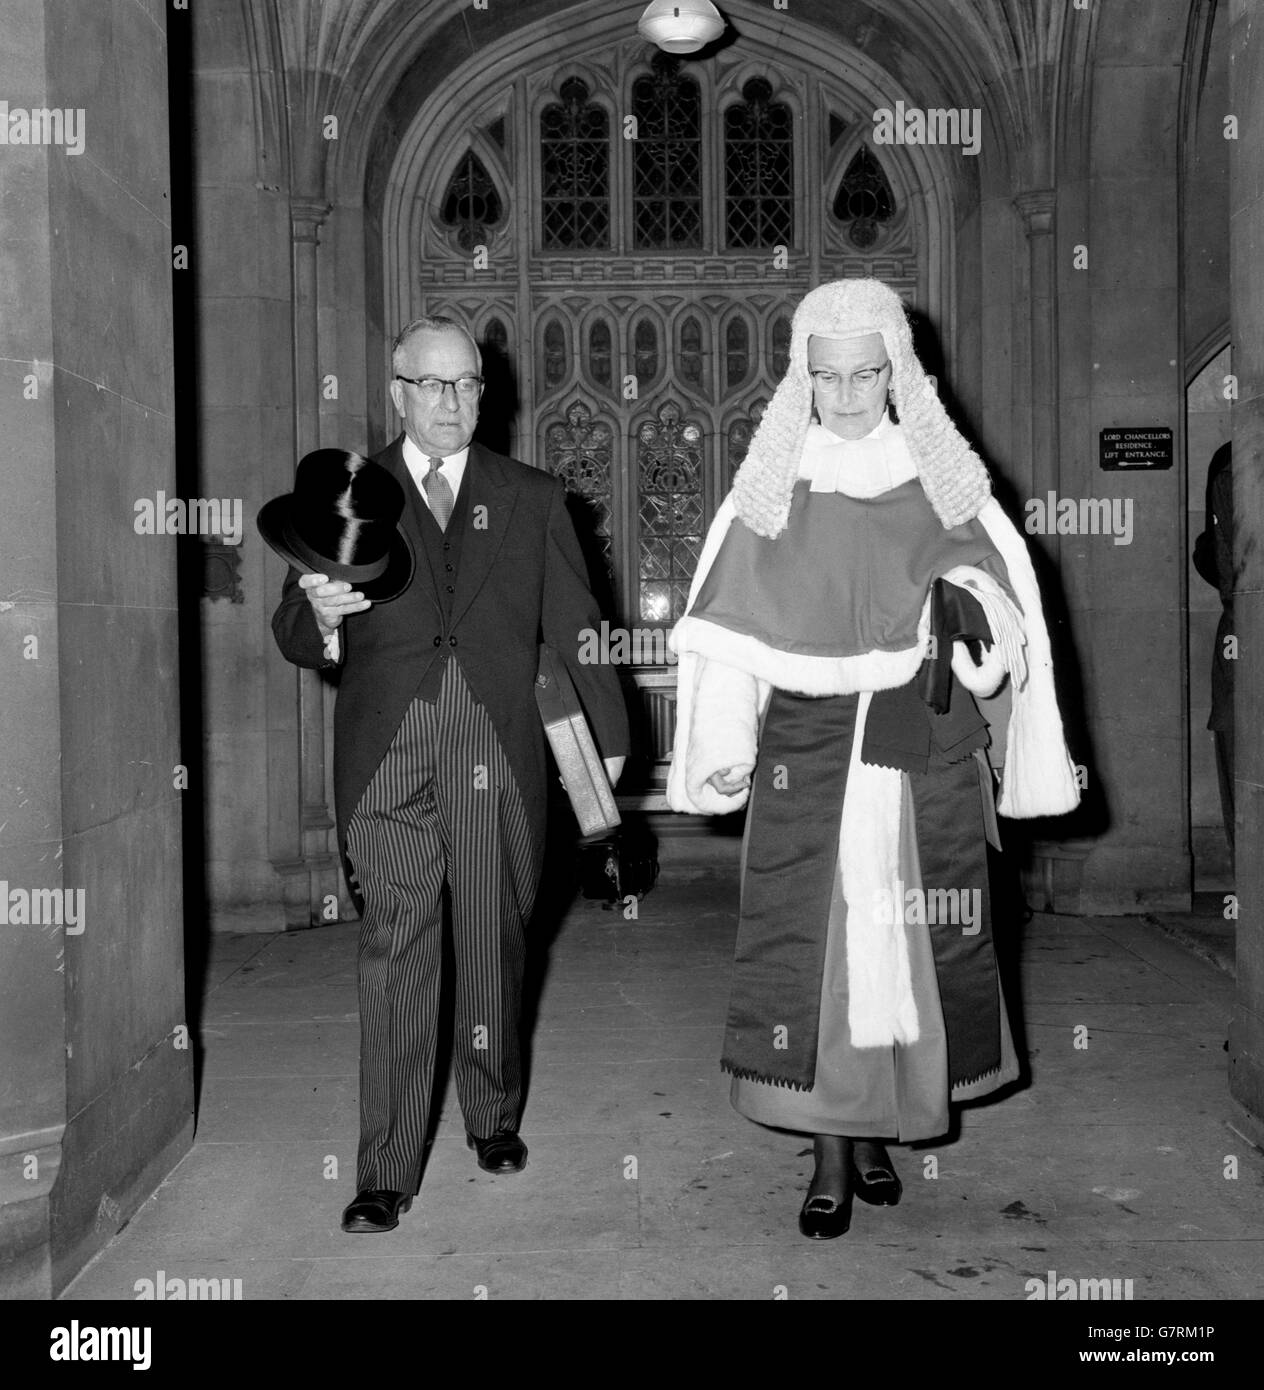 Dame Elizabeth Lane, la première femme à devenir juge de la haute Cour,  dans sa perruque et ses robes alors qu'elle quitte la Chambre des Lords  avec son greffier après son assermentation